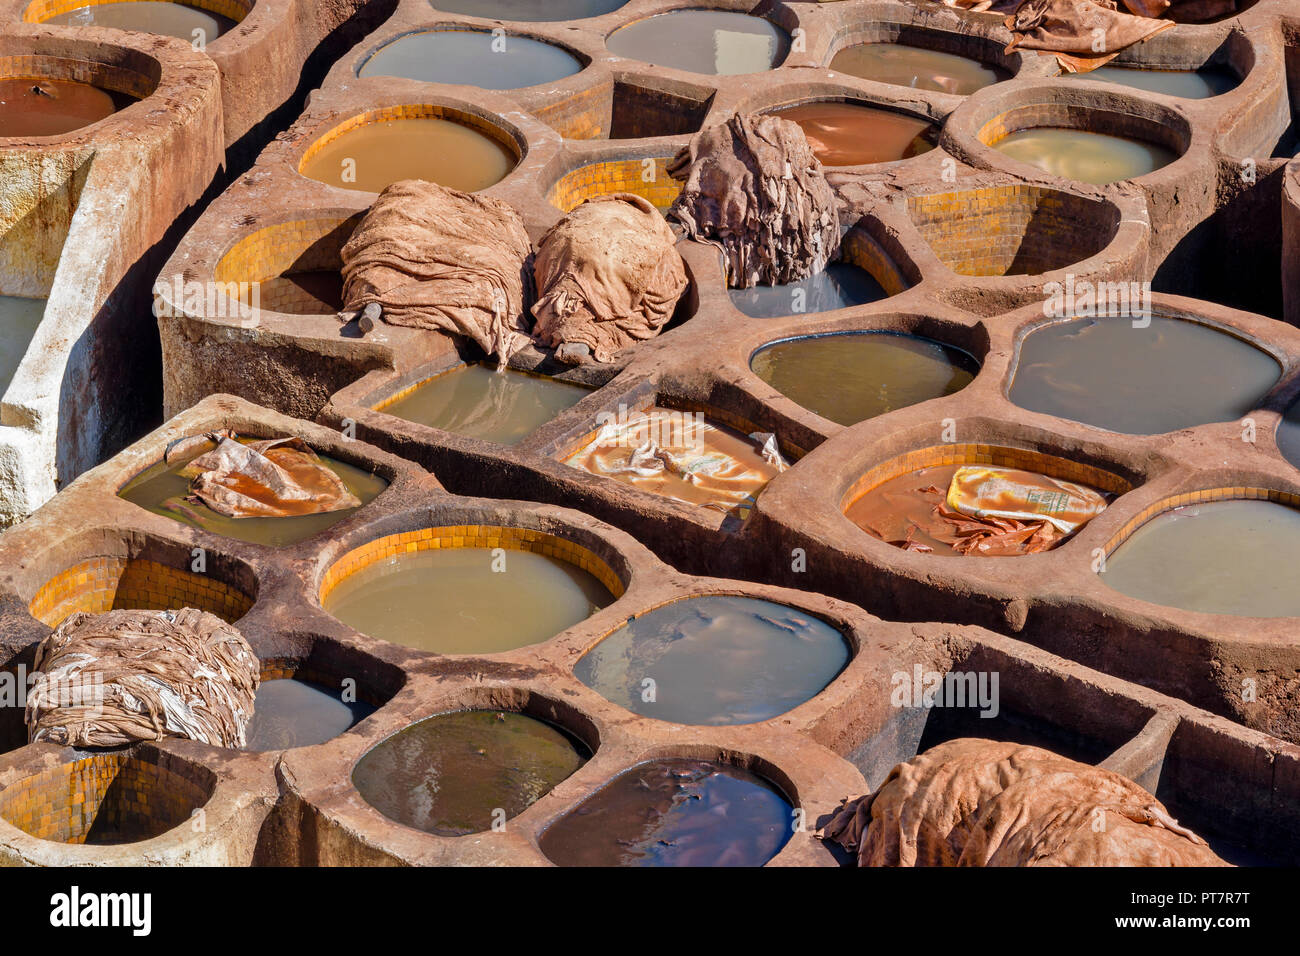 Il Marocco Marrakech conceria cuoio molti tini in piastrelle di pigmenti colorati e pelli Foto Stock